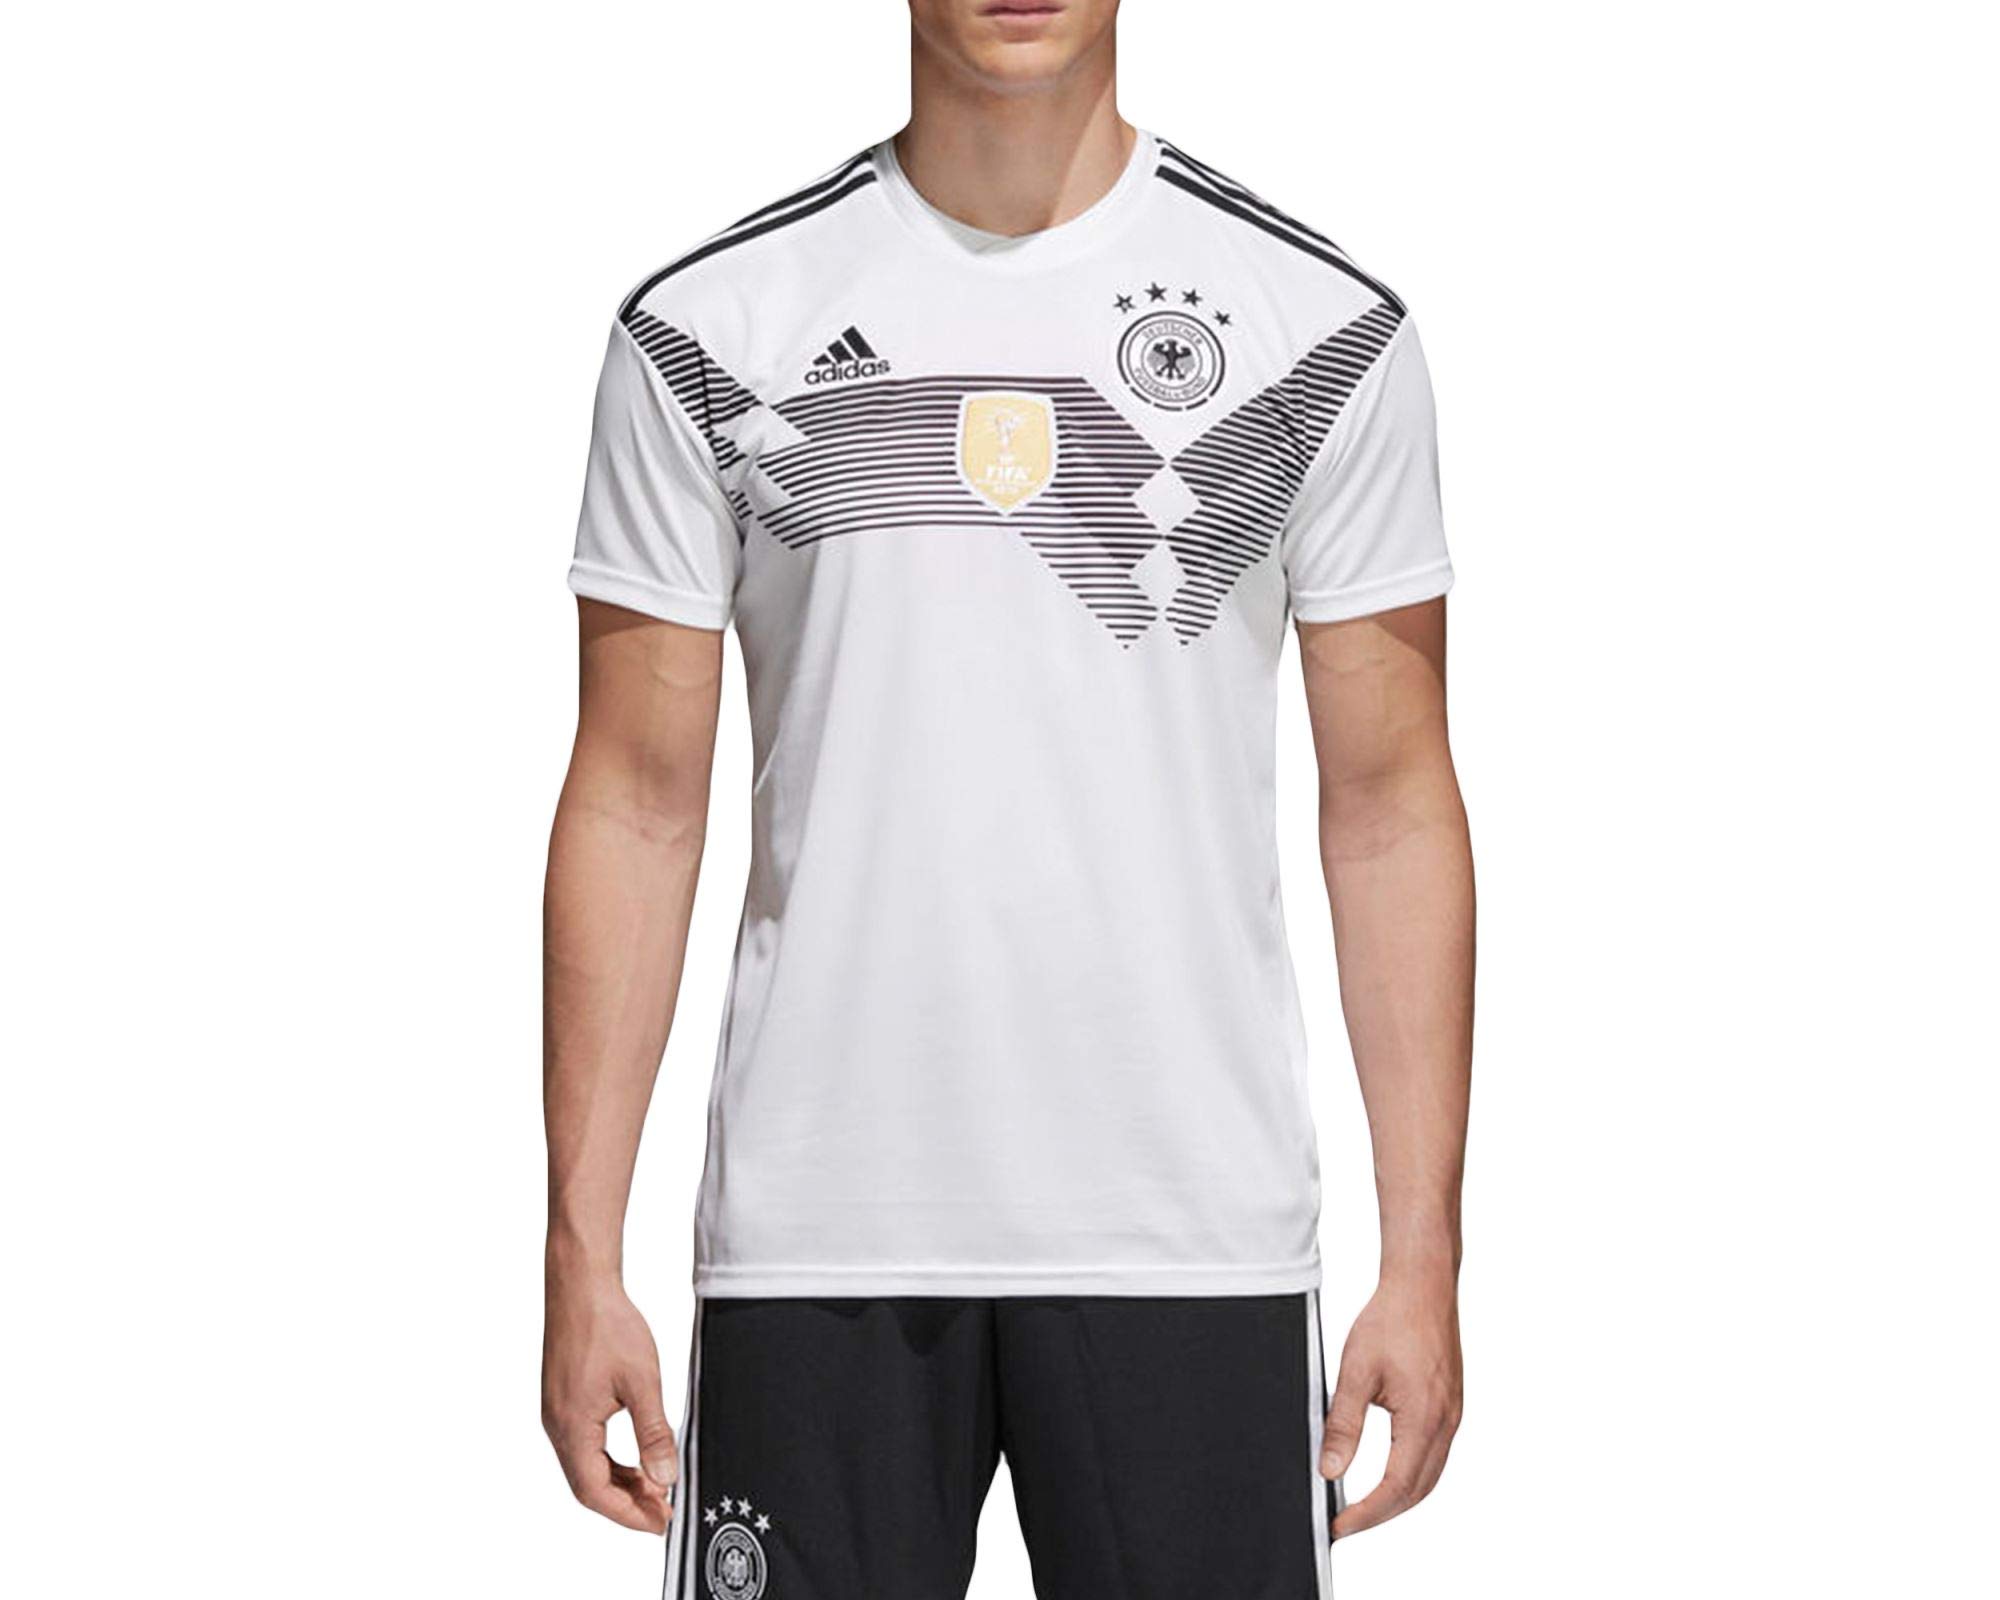 Adidas DFB Trikot Home WM 2018 Herren, Weiß (white/black), XL